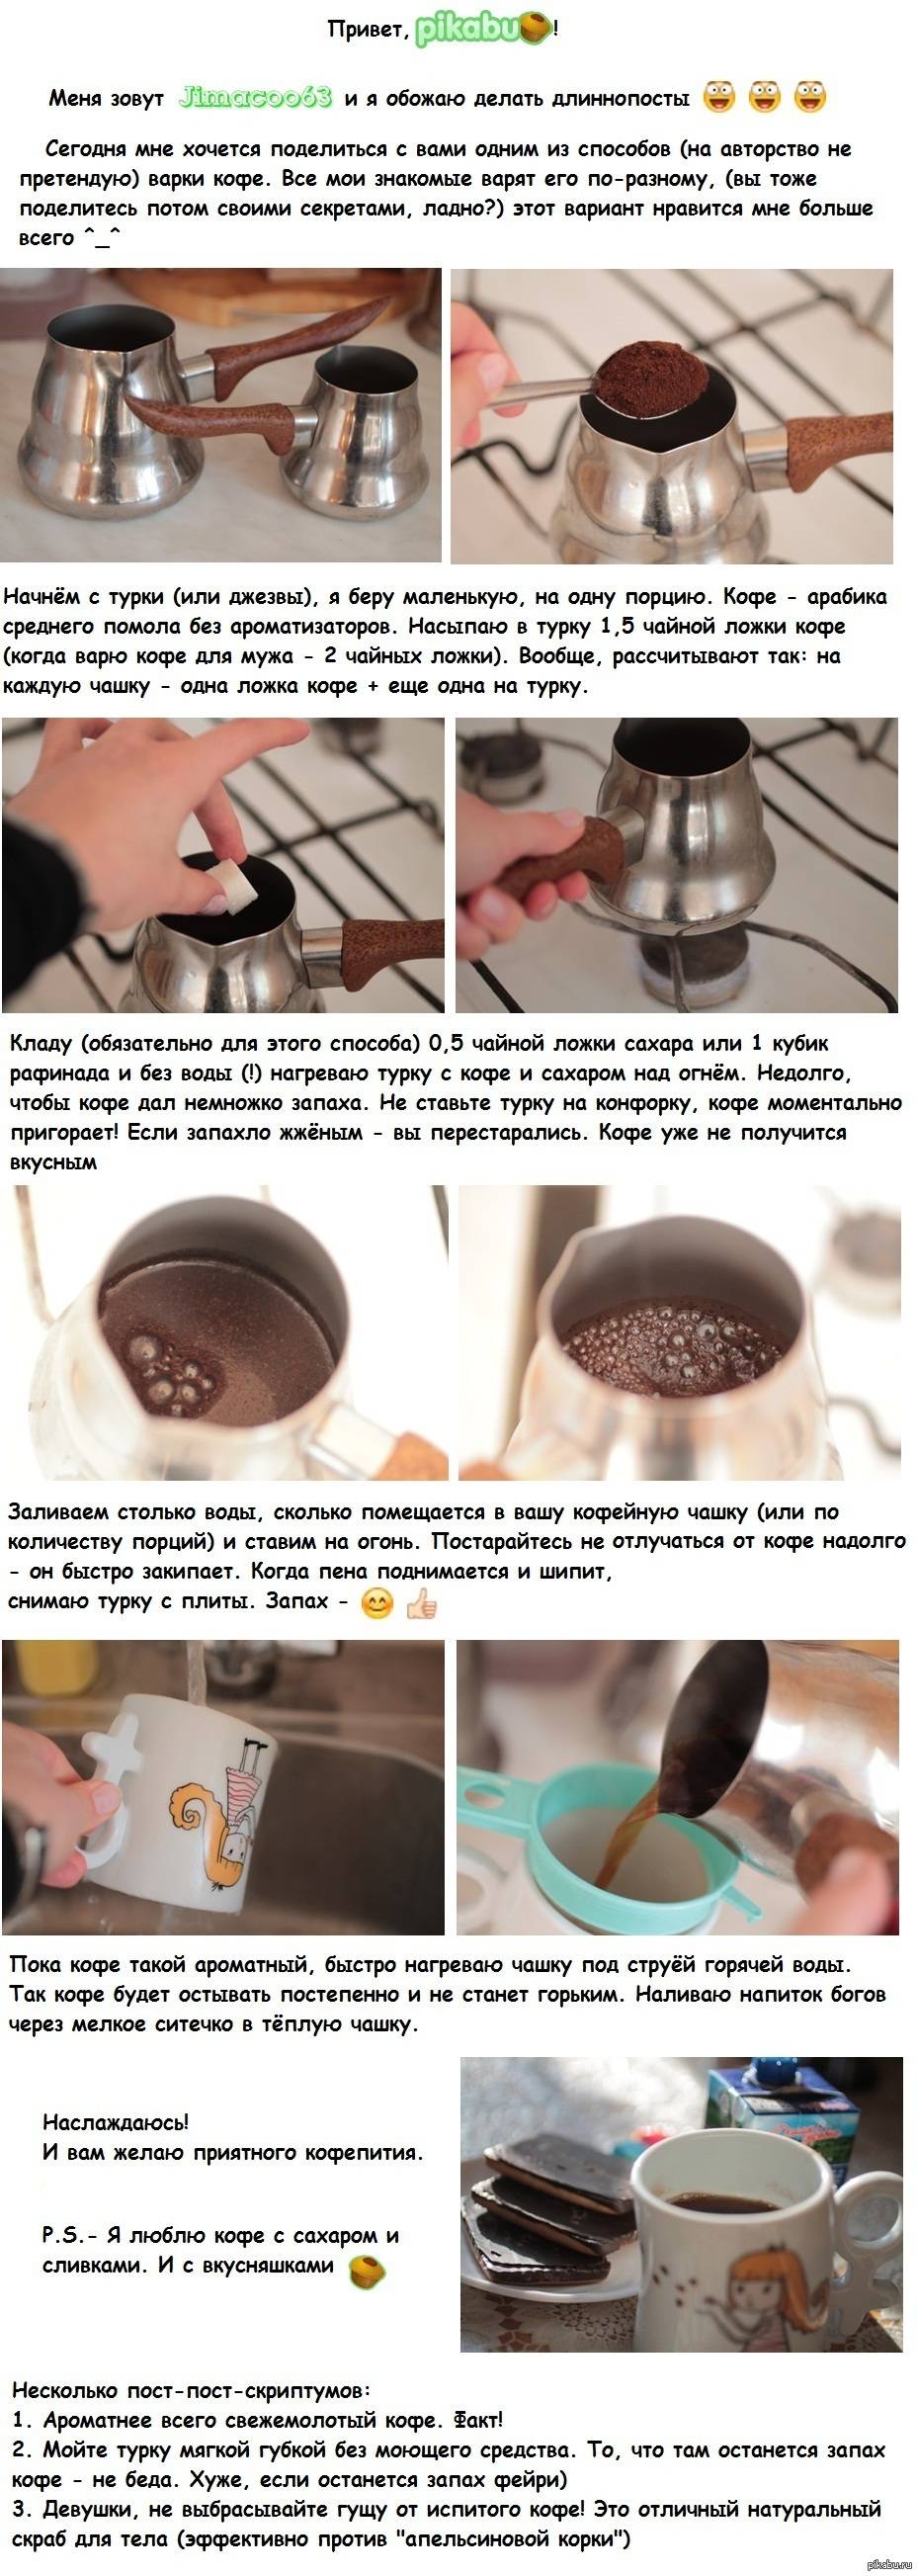 Как сварить идеальный кофе в домашних условиях - лайфхакер